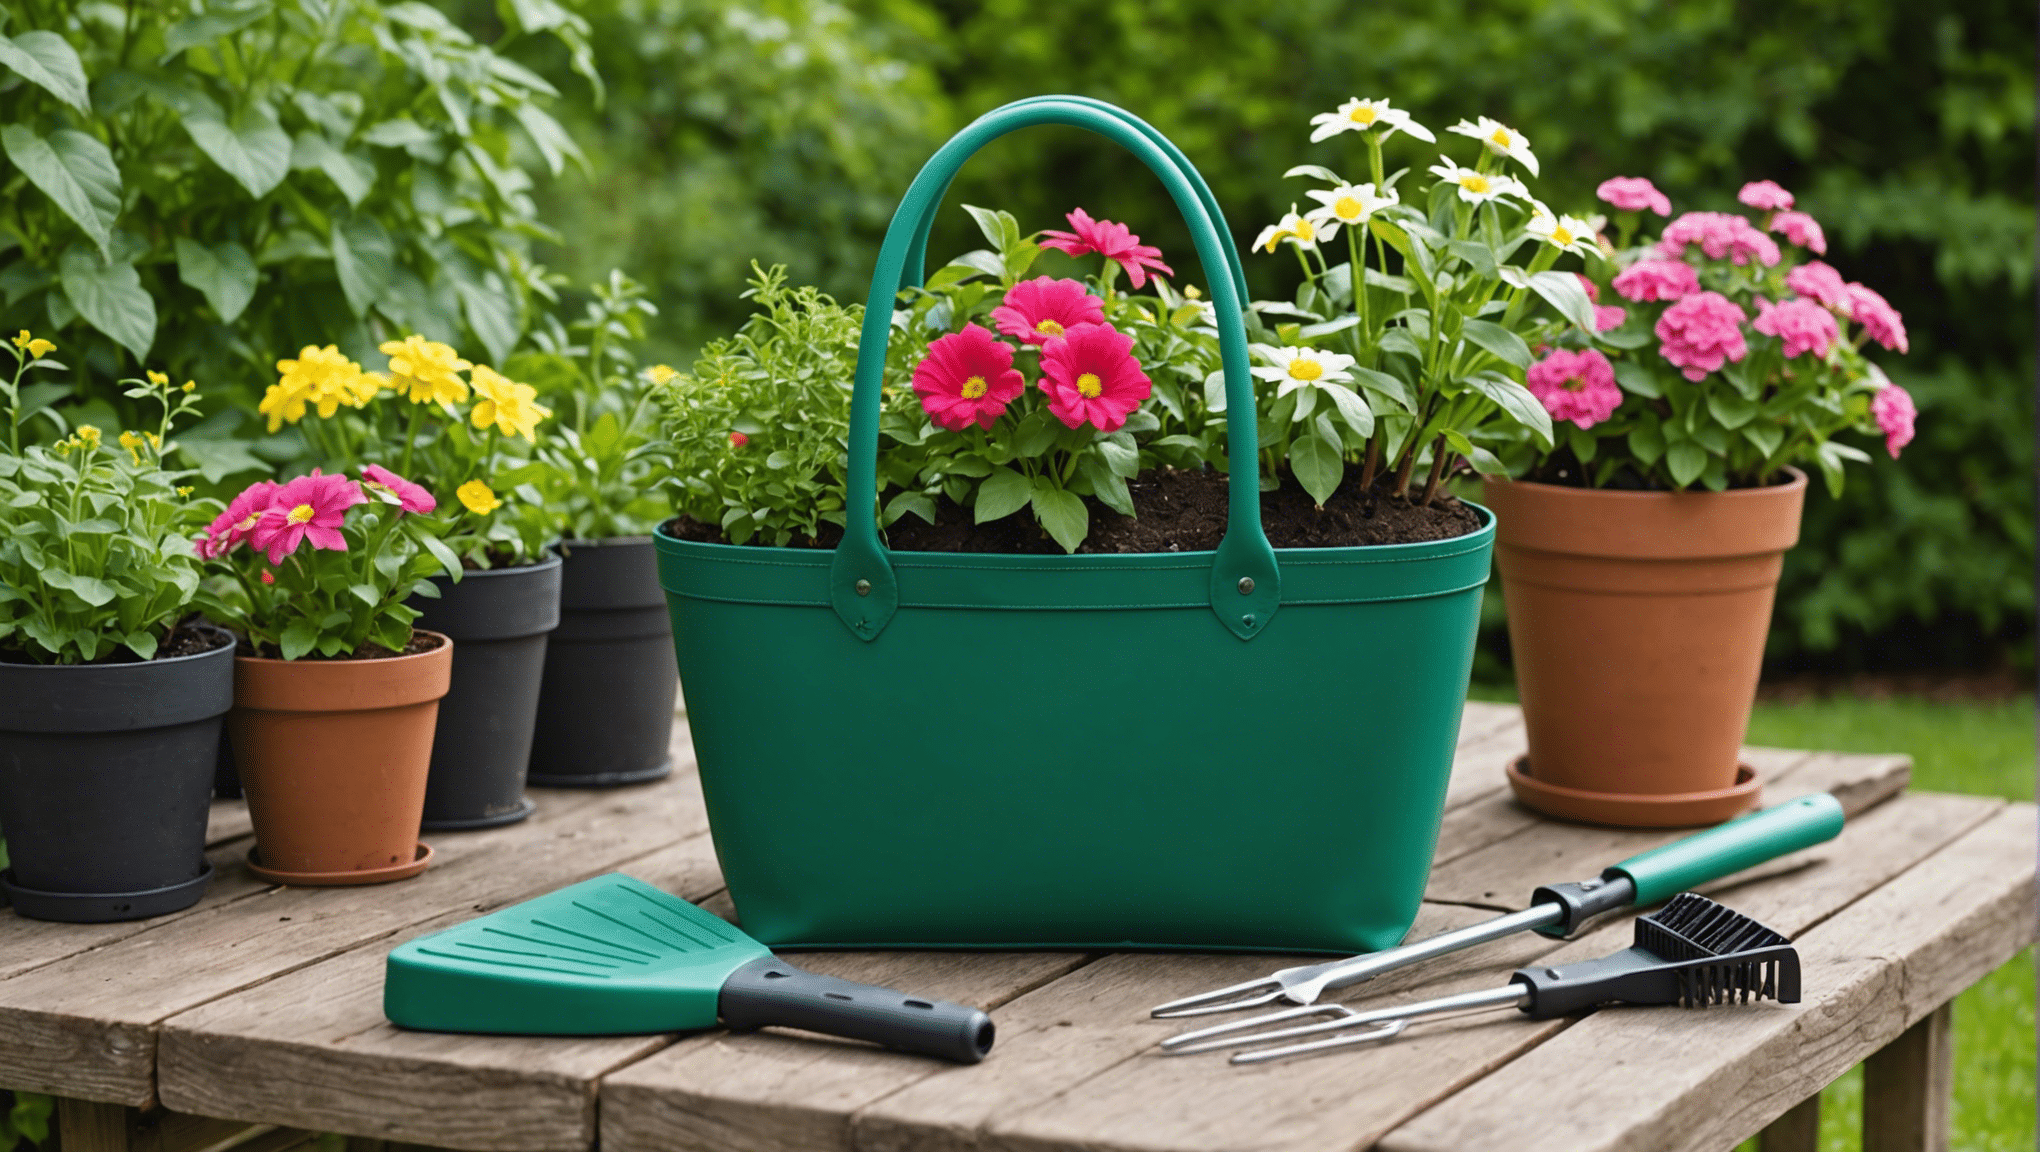 scopri le caratteristiche indispensabili di una borsa da giardinaggio e trova quella perfetta per le tue esigenze di giardinaggio. scopri materiali durevoli, ampio spazio di archiviazione e design pratico per una deliziosa esperienza di giardinaggio.